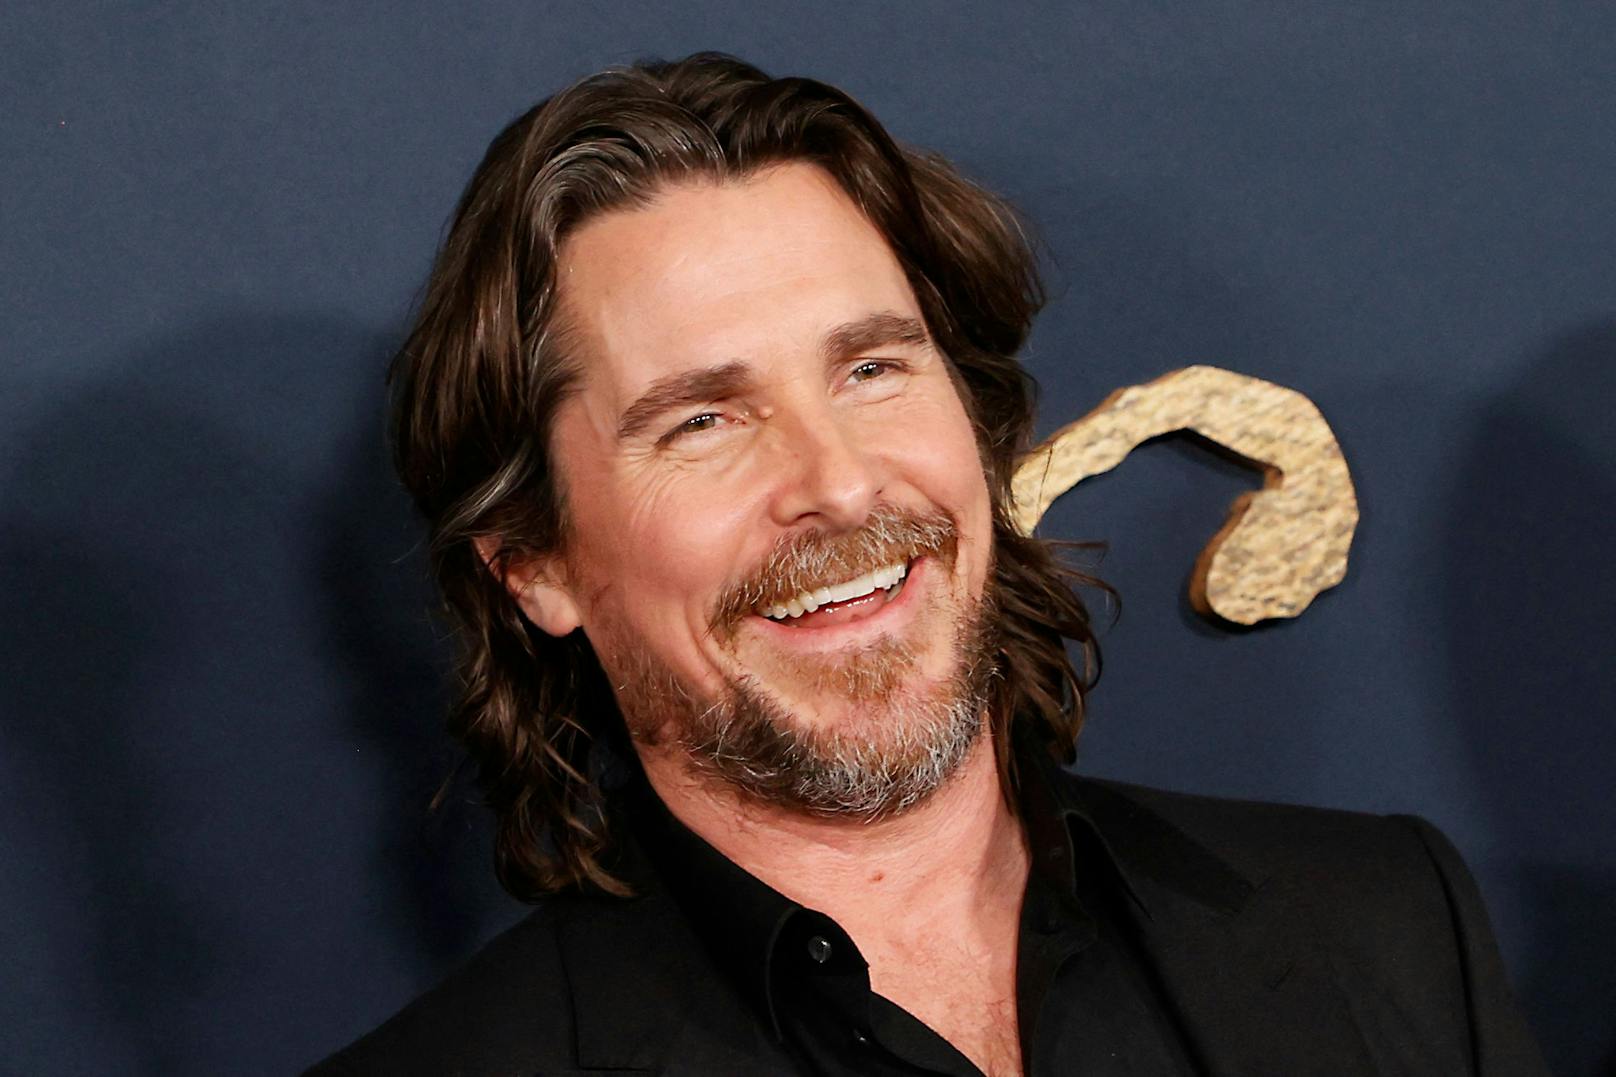 Es kommt zu keiner Überraschung, dass ein begnadeter "Method Acting" Künstler wie Christian Bale in Sache Aberglaube gegen den Strich geht. Er gibt sich nicht nur in seinem Beruf Mühe, sondern auch wenn es darum geht absichtlich unter Leitern zu gehen oder auf rissige Pflastersteine zu treten. 